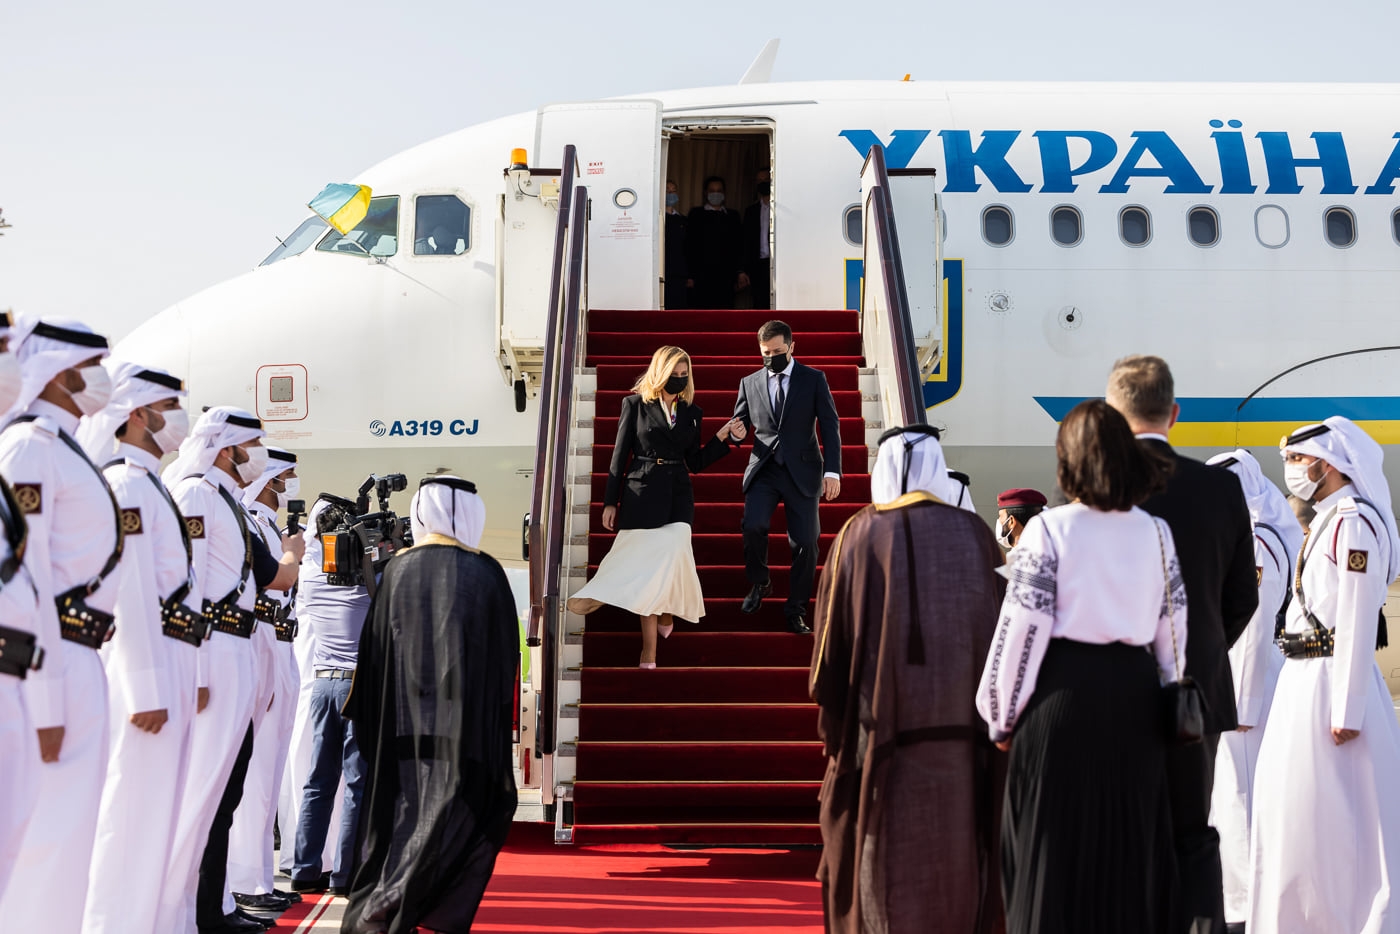 Элегантный жакет и романтичная юбка: стильный образ Елены Зеленской во время визита в Катар (ФОТО) - фото №1